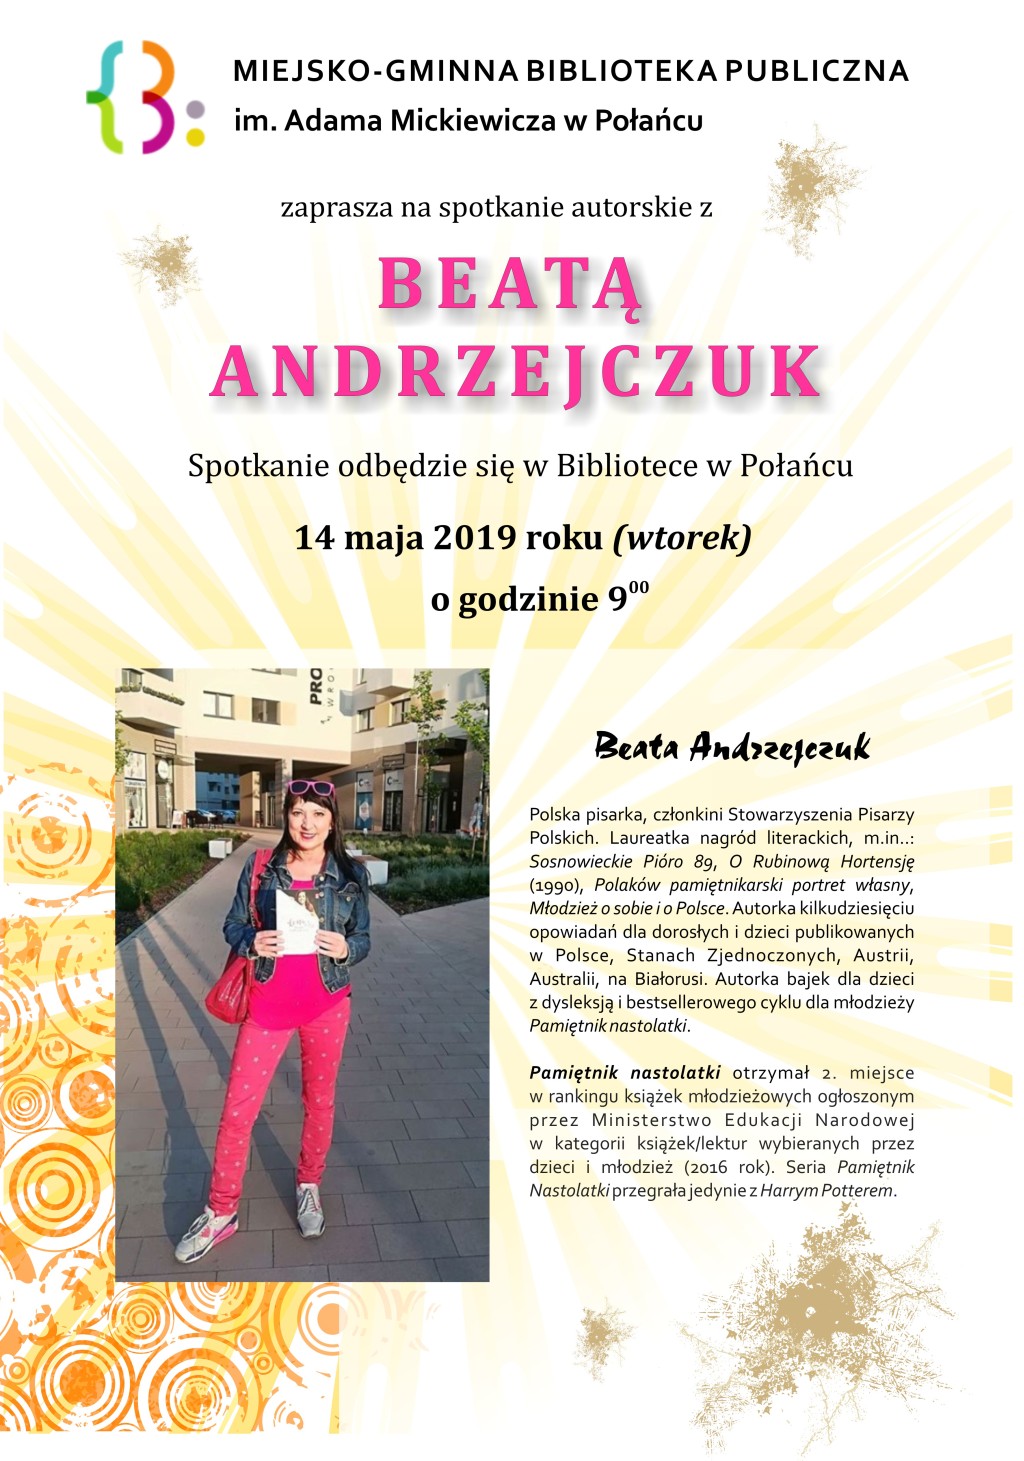 Spotkanie autorskie Beata Andrzejczuk 2019